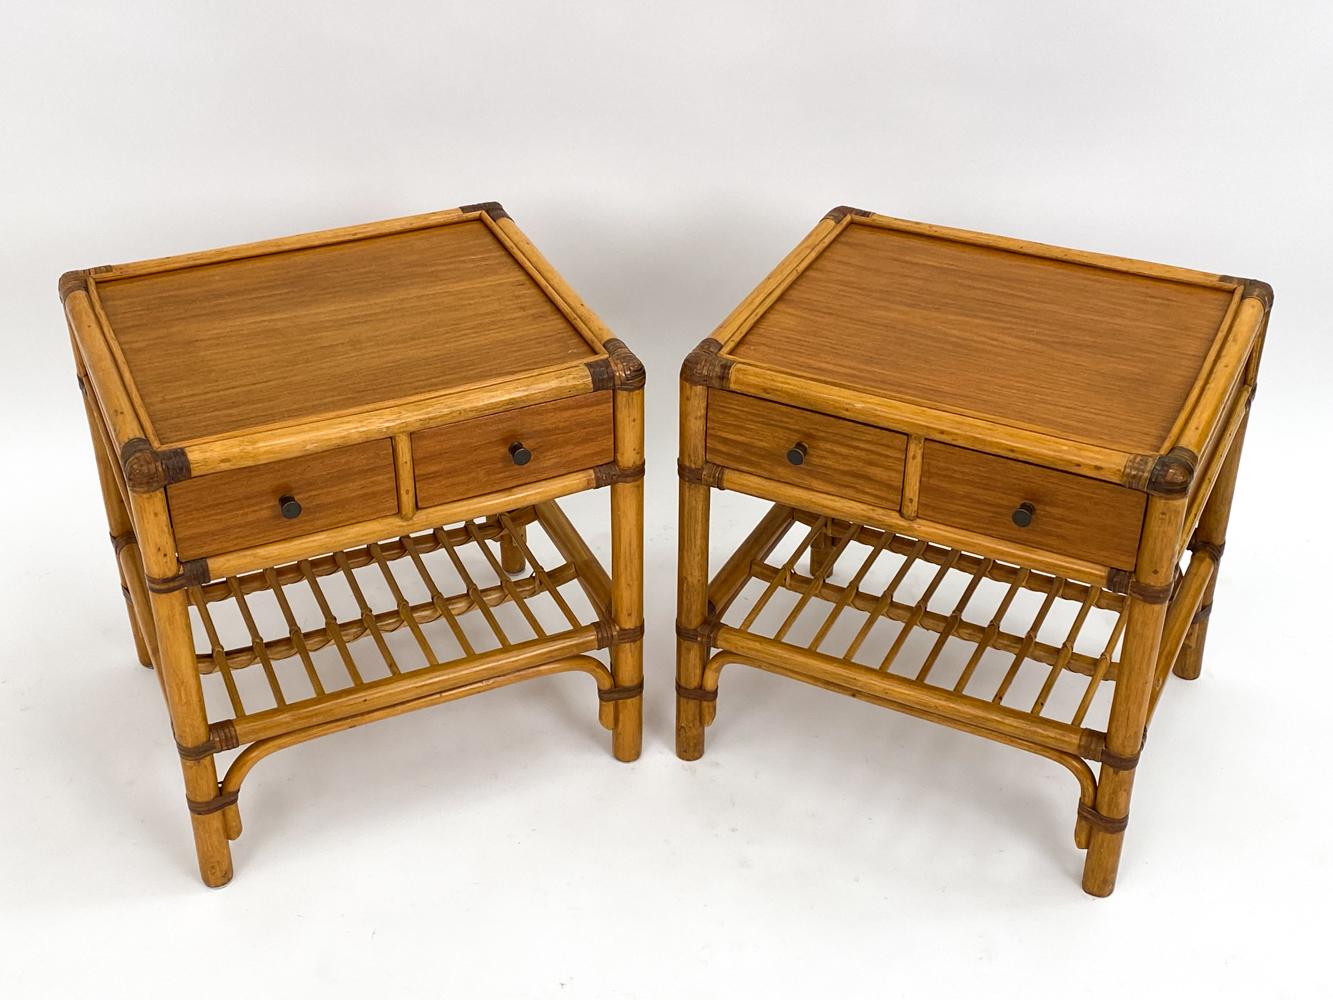 Treten Sie ein in das raffinierte Universum des schwedischen Designs der Jahrhundertmitte mit diesem exquisiten Tischpaar aus Bambus und Rattan, das von der Kultfirma DUX meisterhaft gefertigt wurde. Gefeiert für seine Innovation und